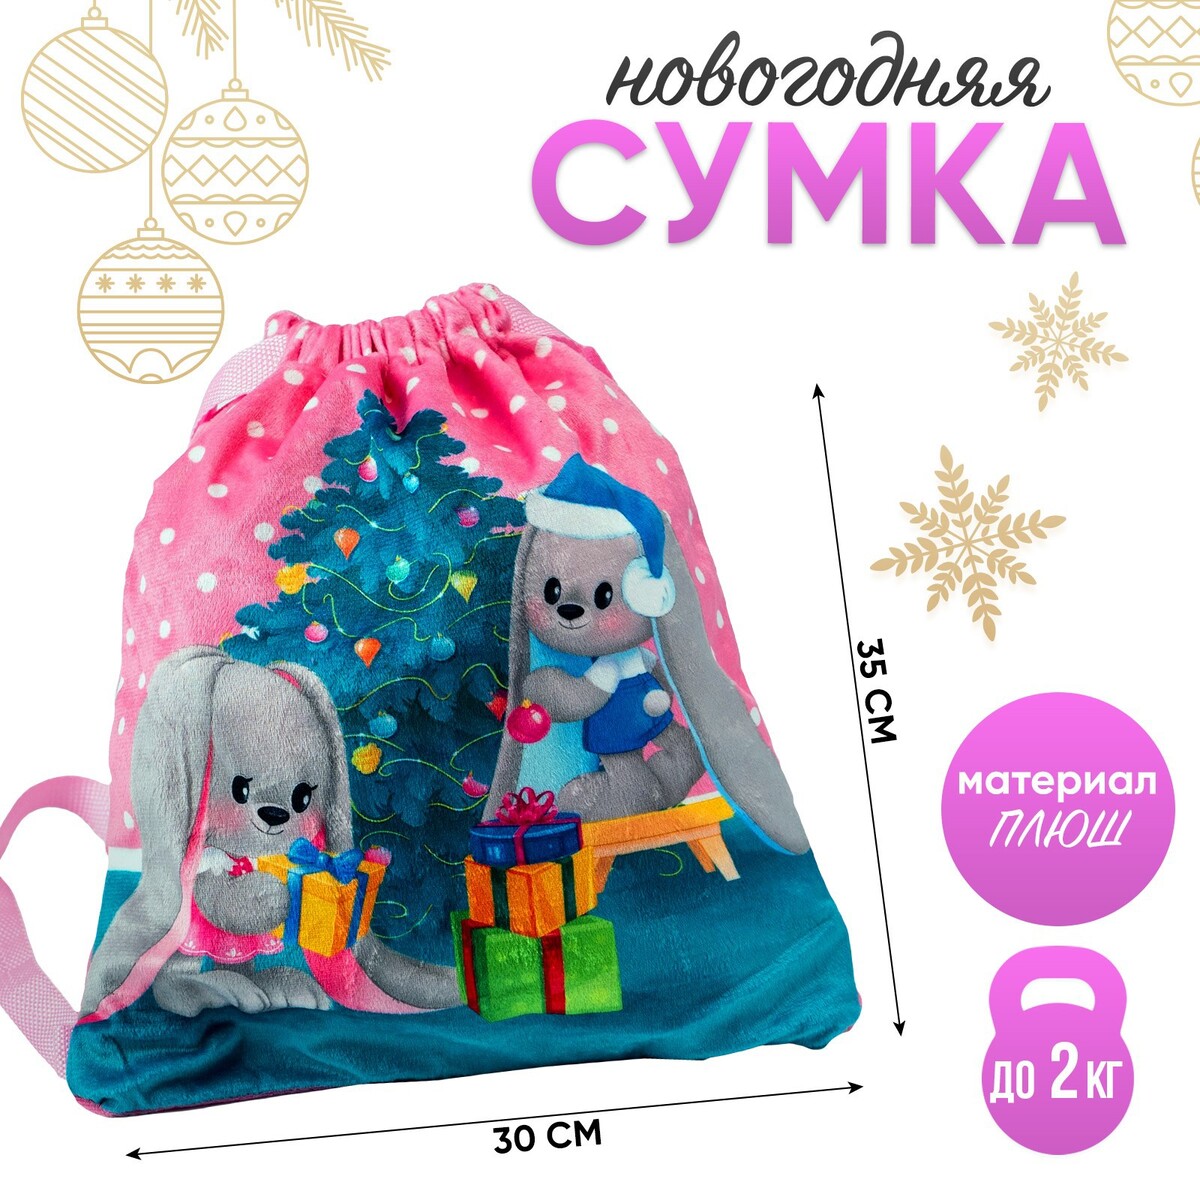 Новогодняя детская сумка для девочки